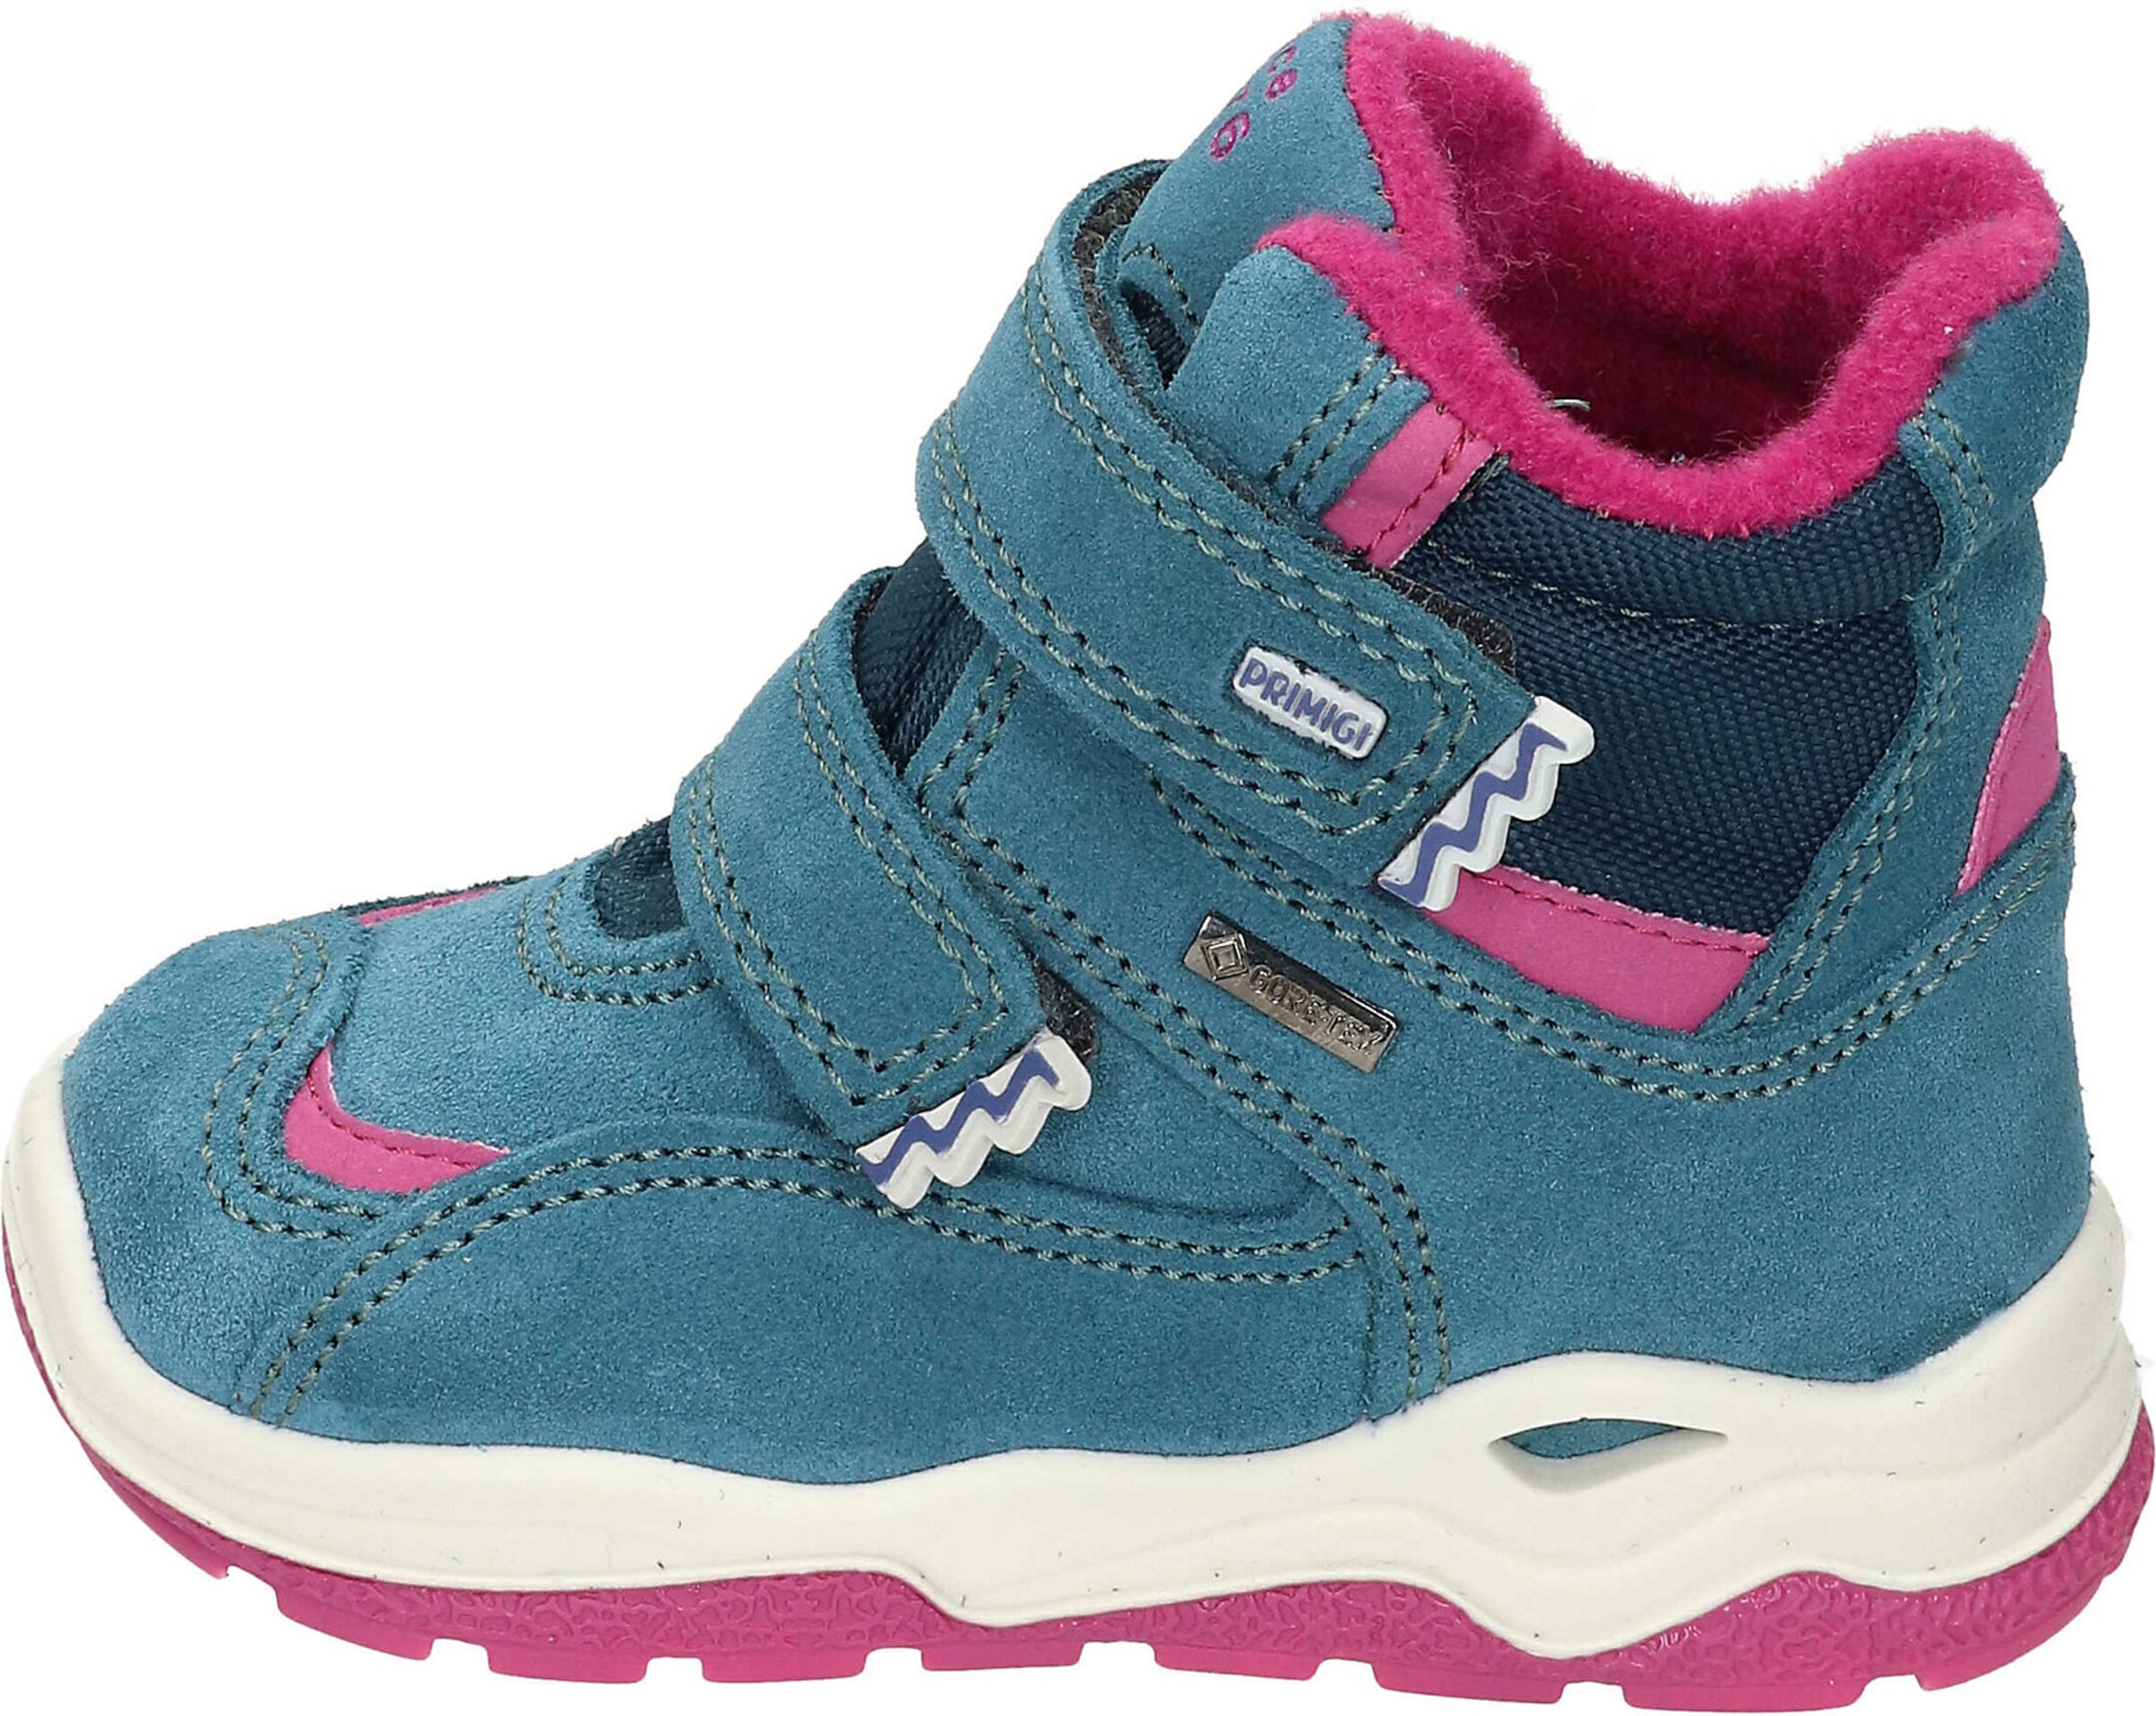 Kinder Schuhe PRIMIGI Stiefelette in Blau, Pink - XY06961